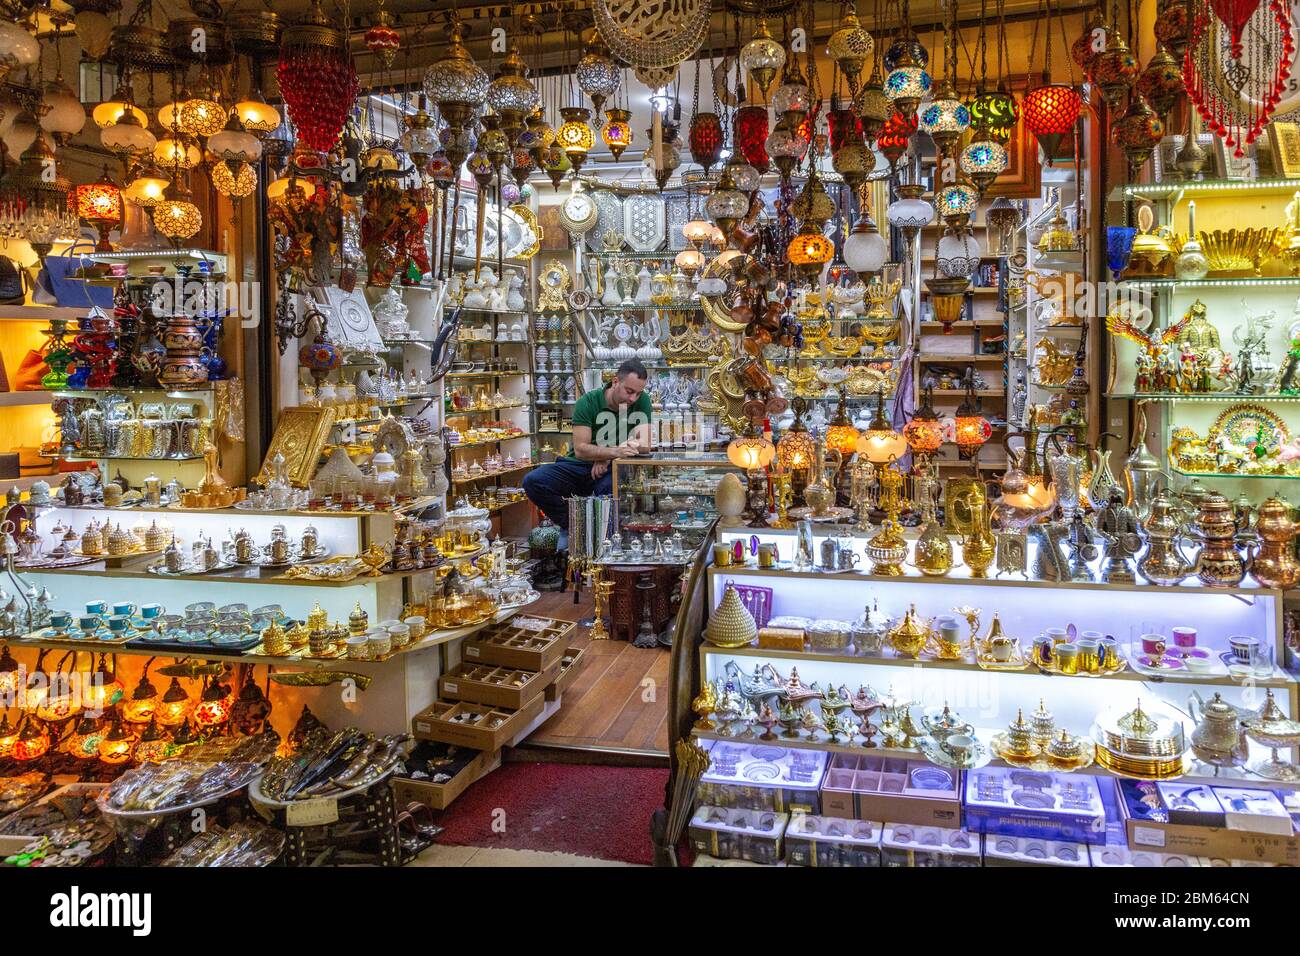 Kapalicarsi, Großer Basar, Grand Bazaar. Labyrinth von bunten überdachten Märkten, Istanbul Stock Photo